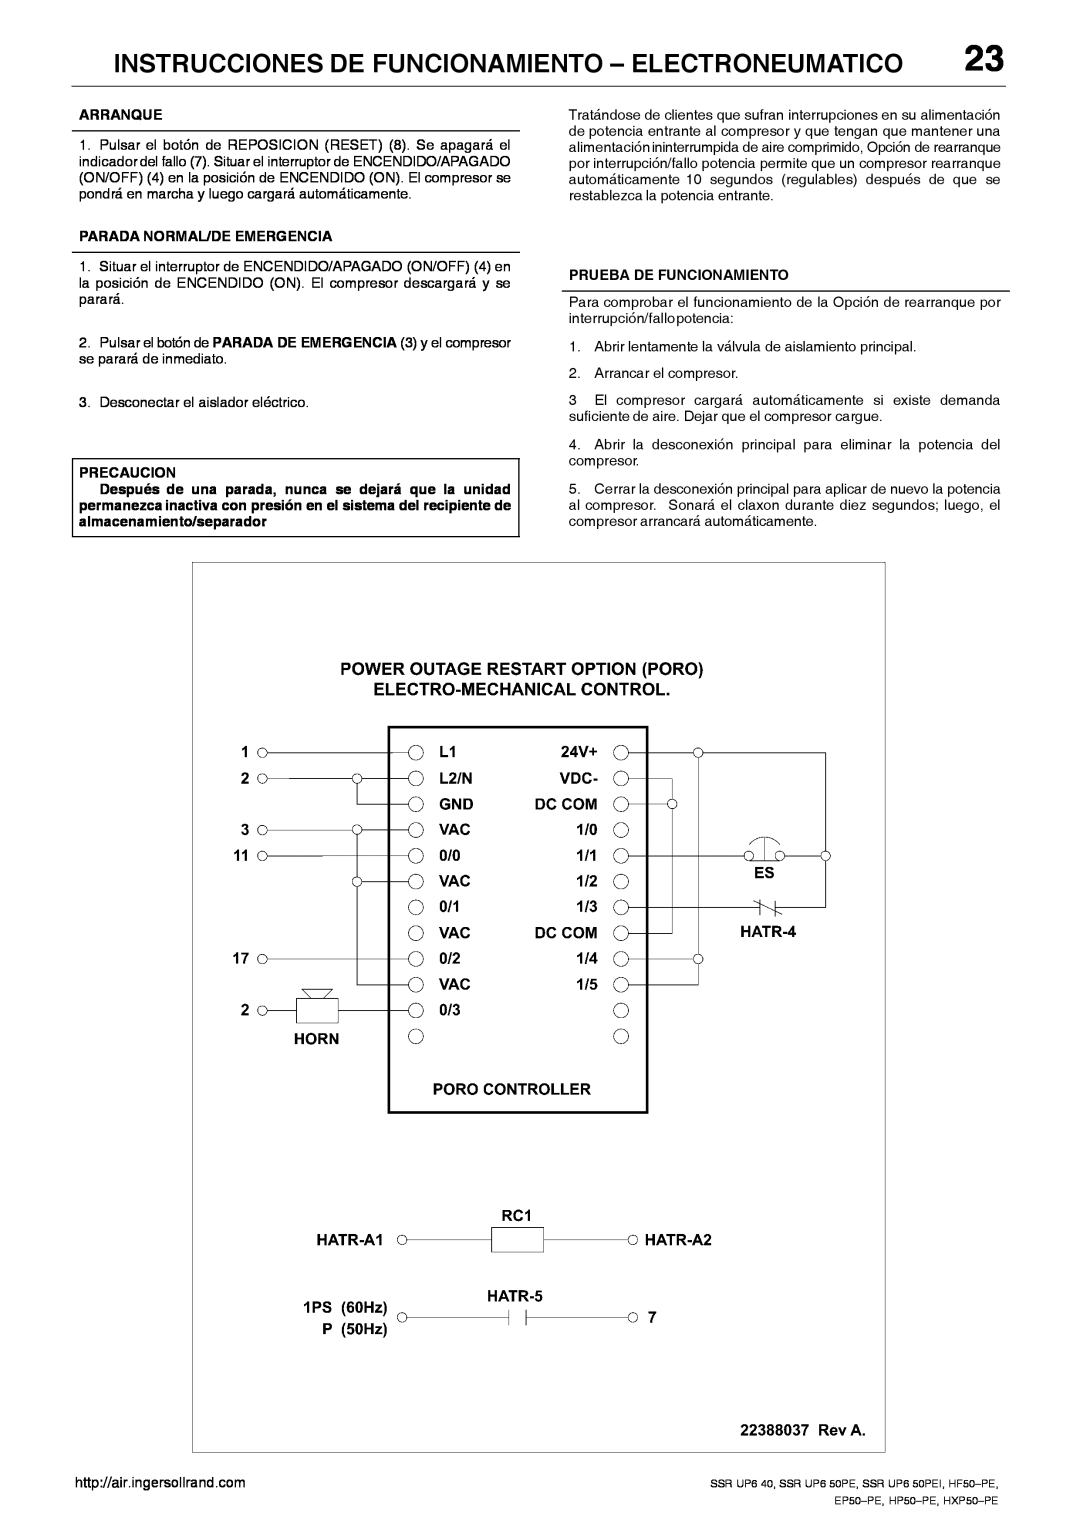 Ingersoll-Rand EP50-PE, SSR UP6 40, SSR UP6 50PEI HF50-PE, HXP50-PE Instrucciones De Funcionamiento - Electroneumatico 